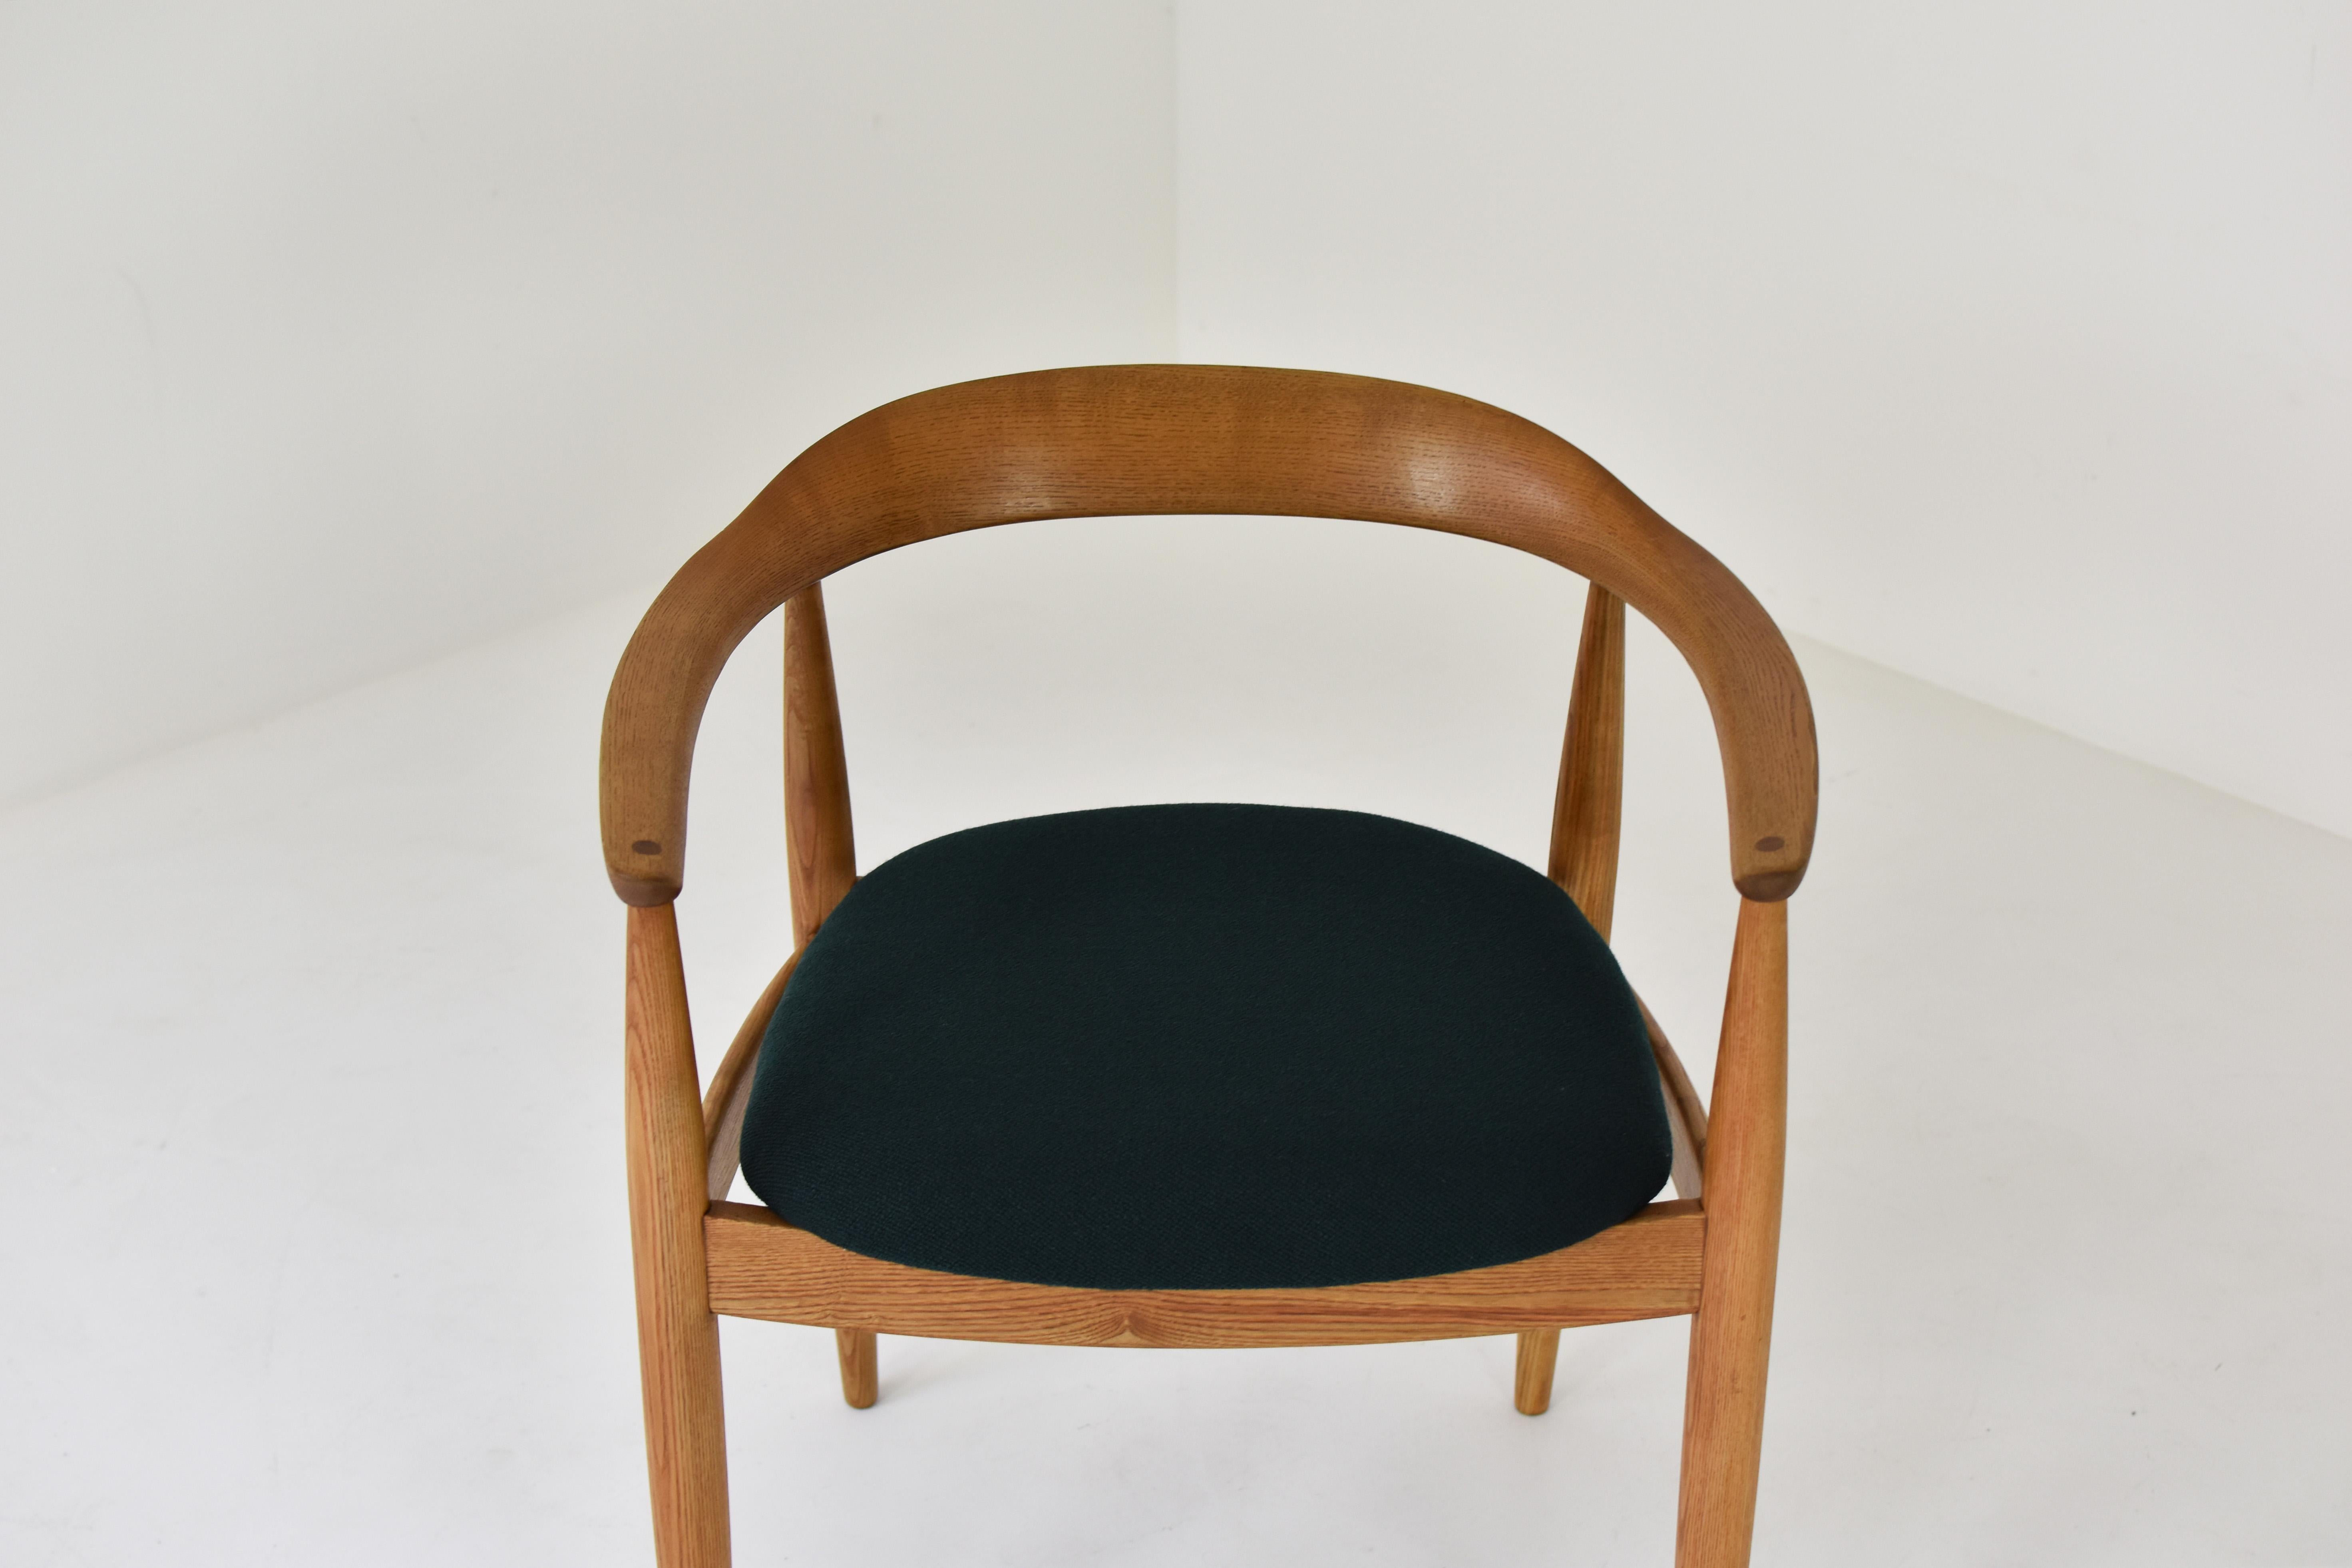 Mid-20th Century Armchair in Solid Oak by Illum Wikkelsø for Niels Eilersen, Denmark 1950s